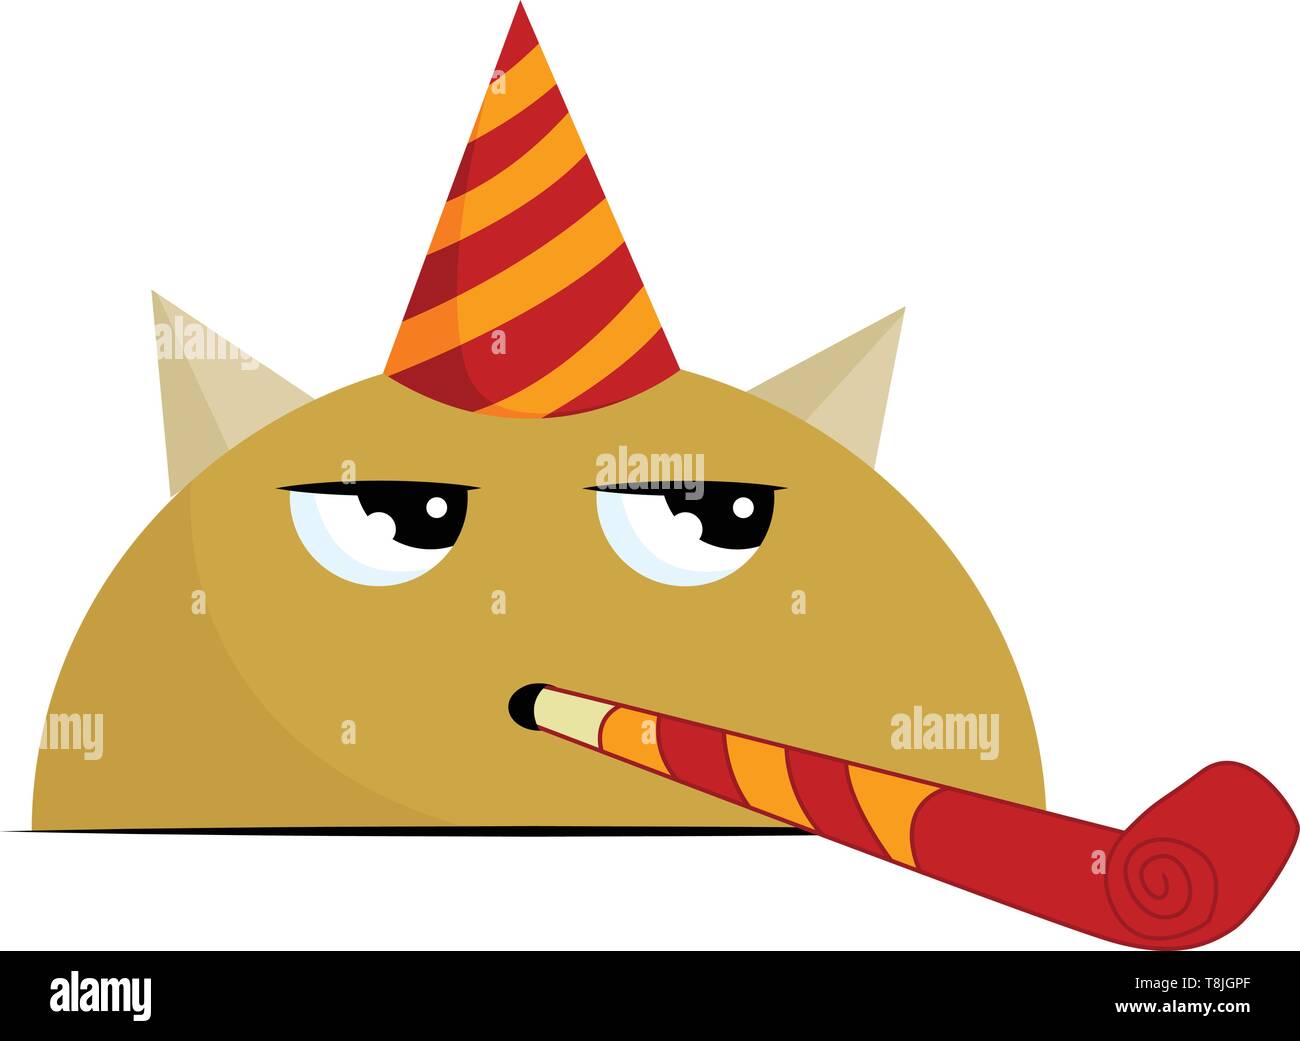 Imágenes y Gifs Animados ®: IMÁGENES DE GORROS DE CUMPLEAÑOS  Gorros de  cumpleaños, Sombreros para fiestas, Sombreros de cumpleaños